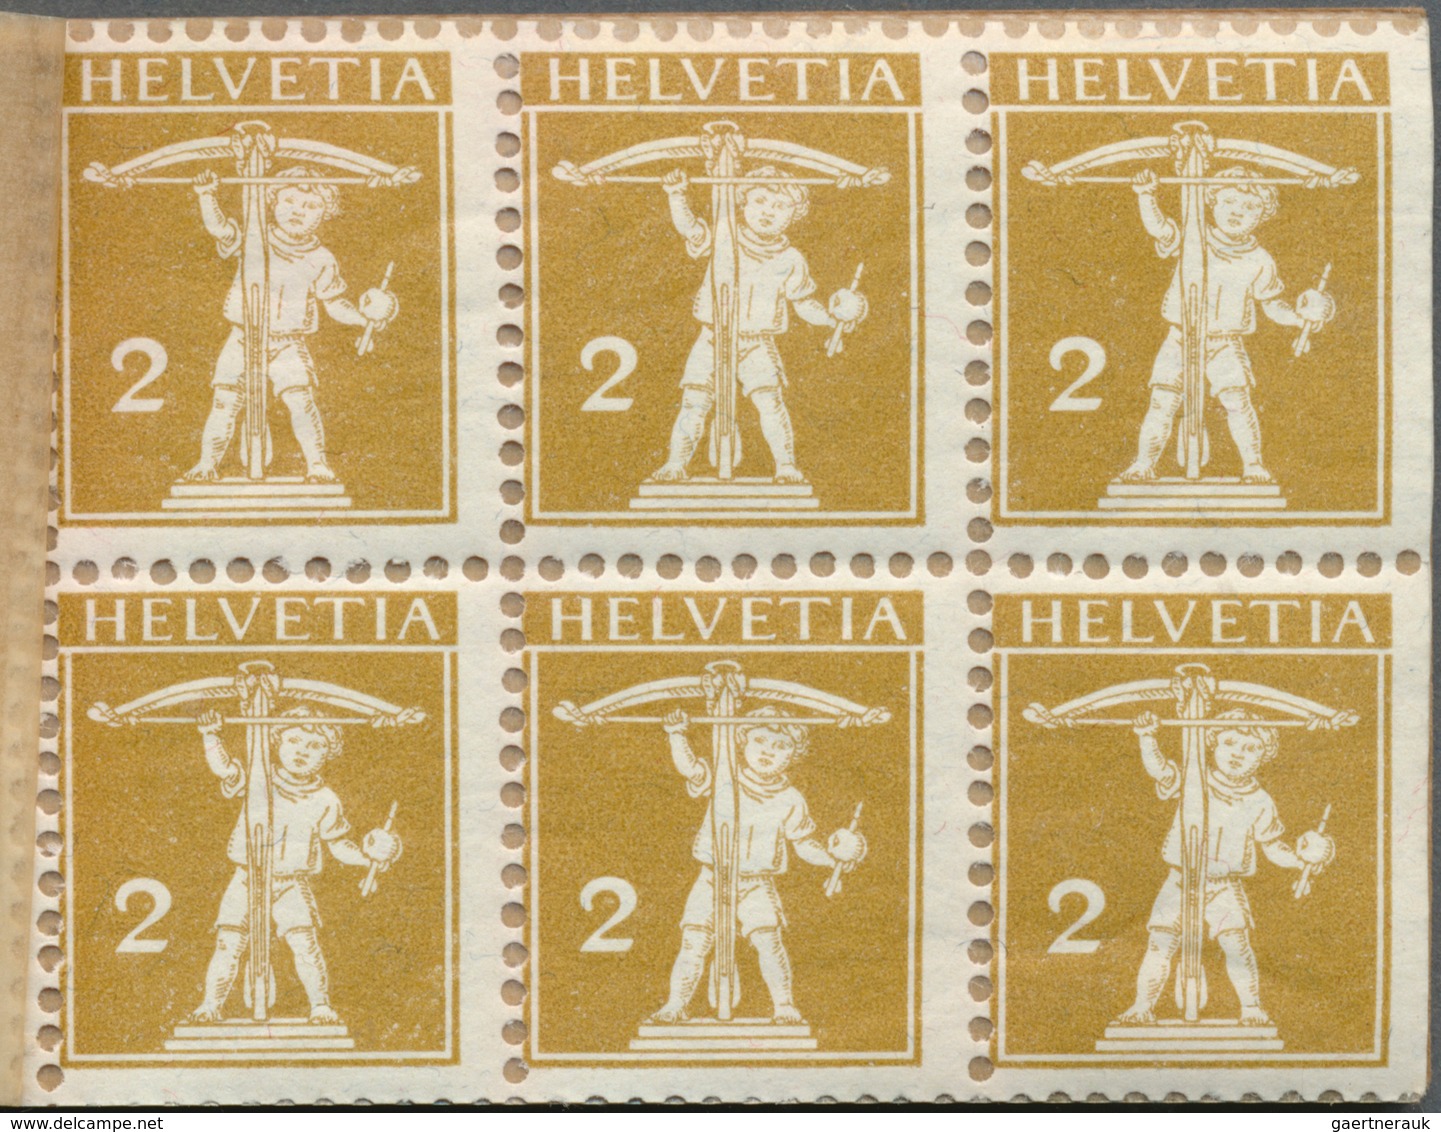 28134 Schweiz - Markenheftchen: 1921/2002, vielseitiger Sammlungsbestand von ca. 165 Markenheftchen postfr